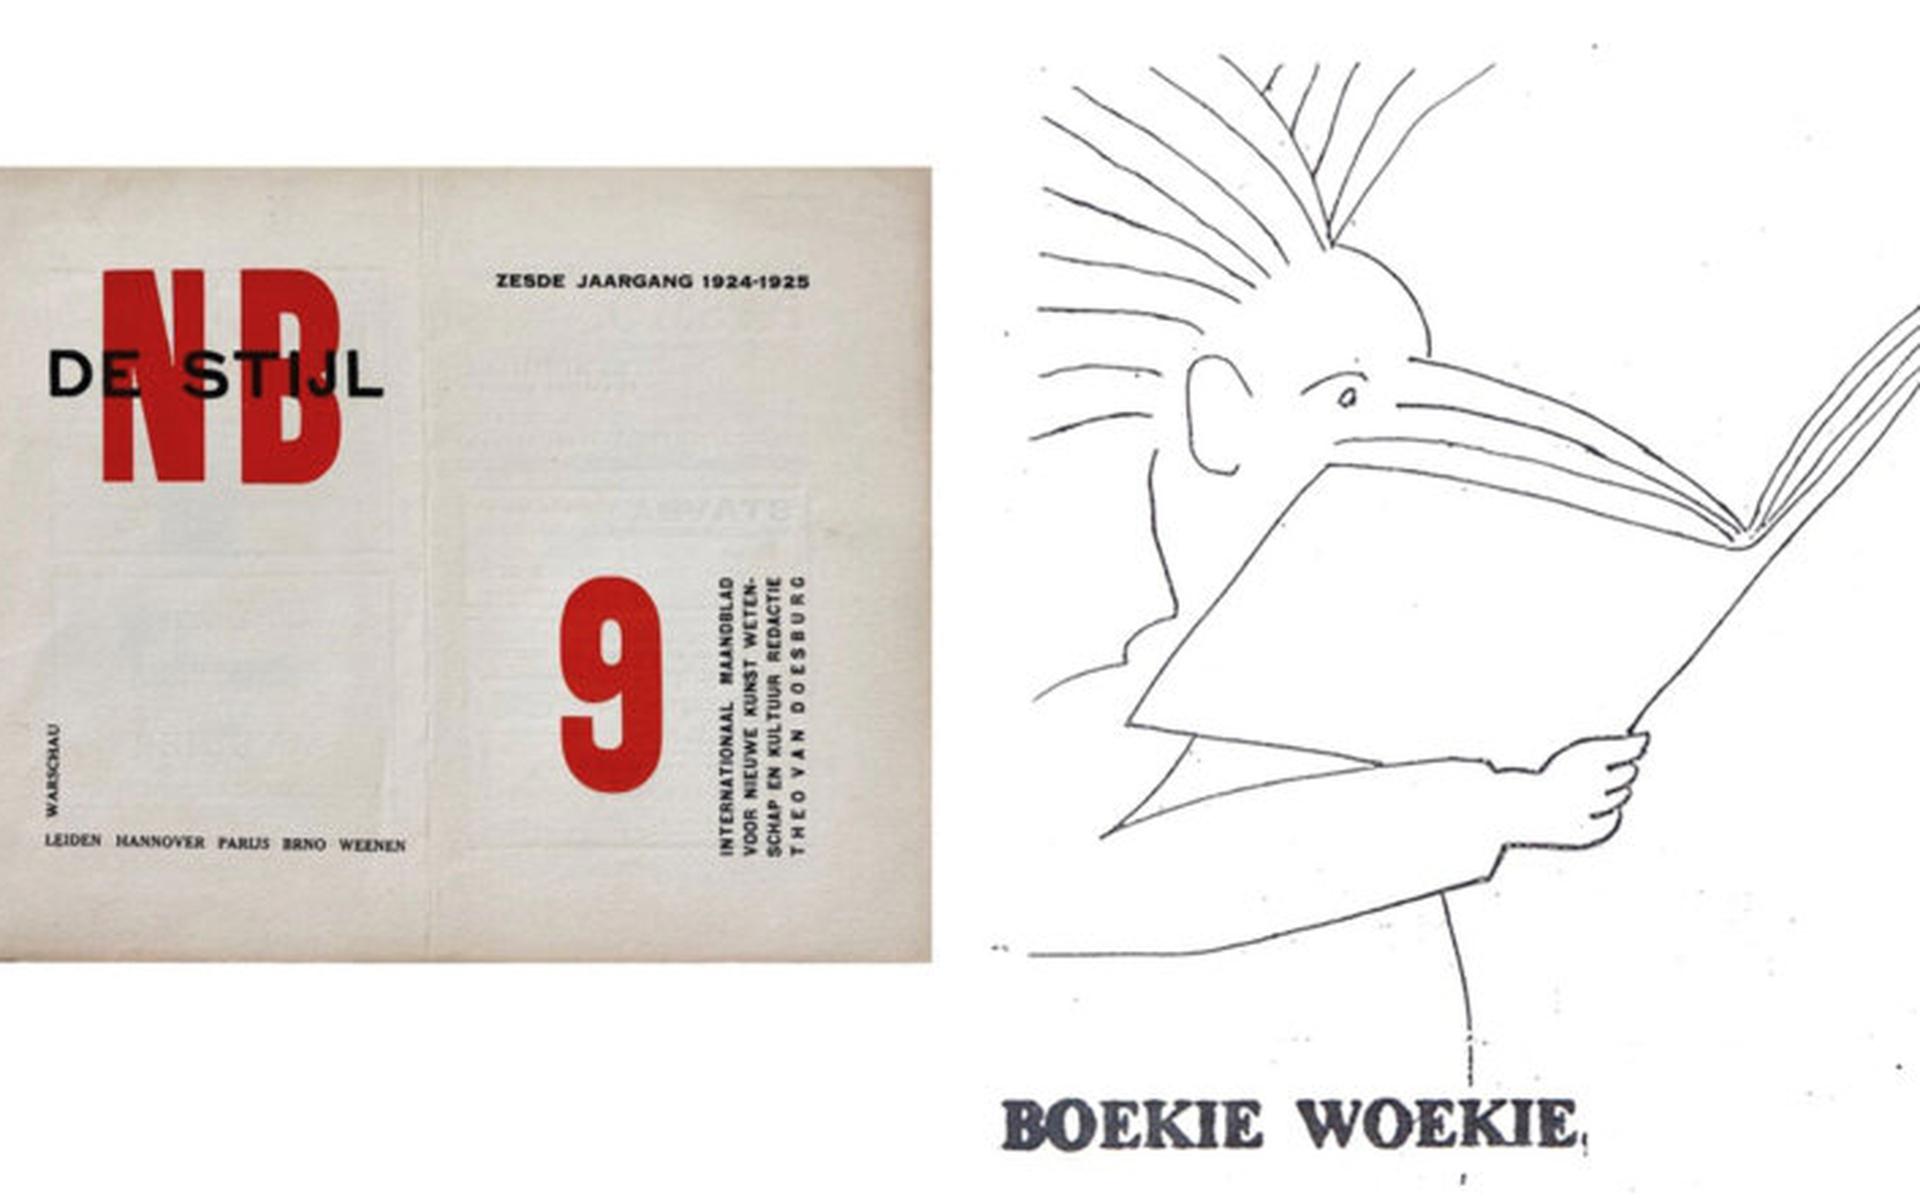 De Stijl, nr. 9, 1924/25 (links) en Boekie Woekie, tekening van Jan Voss.